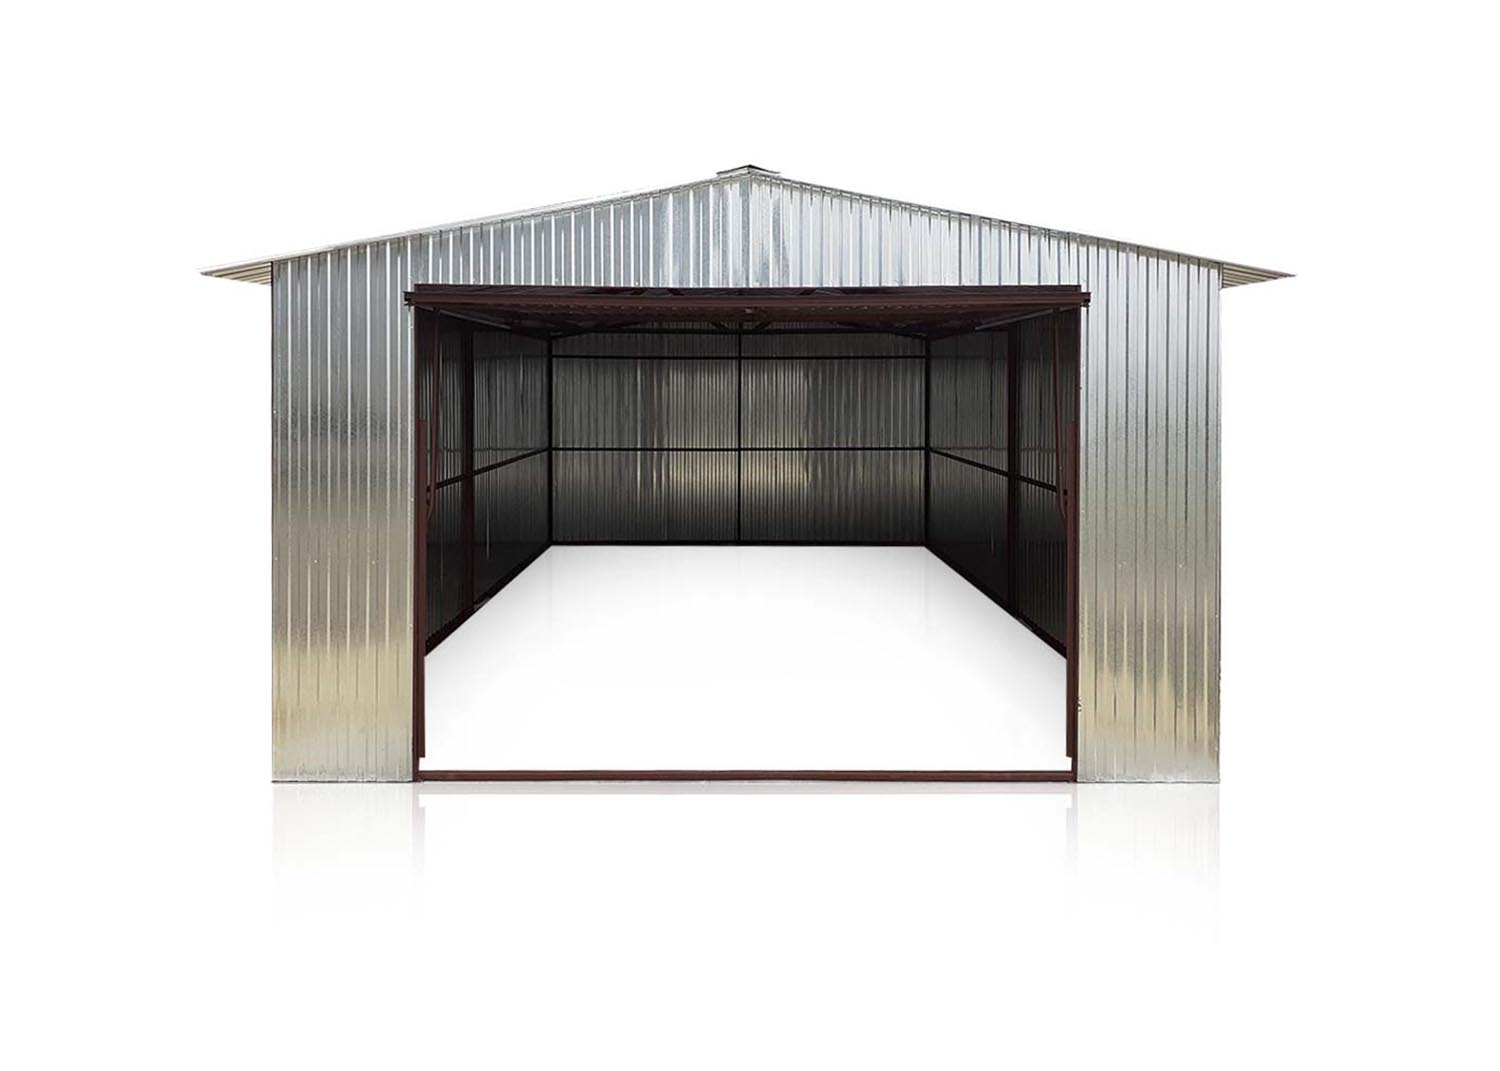 Plechová garáž 4x5m sedlová strecha-výklopná brána